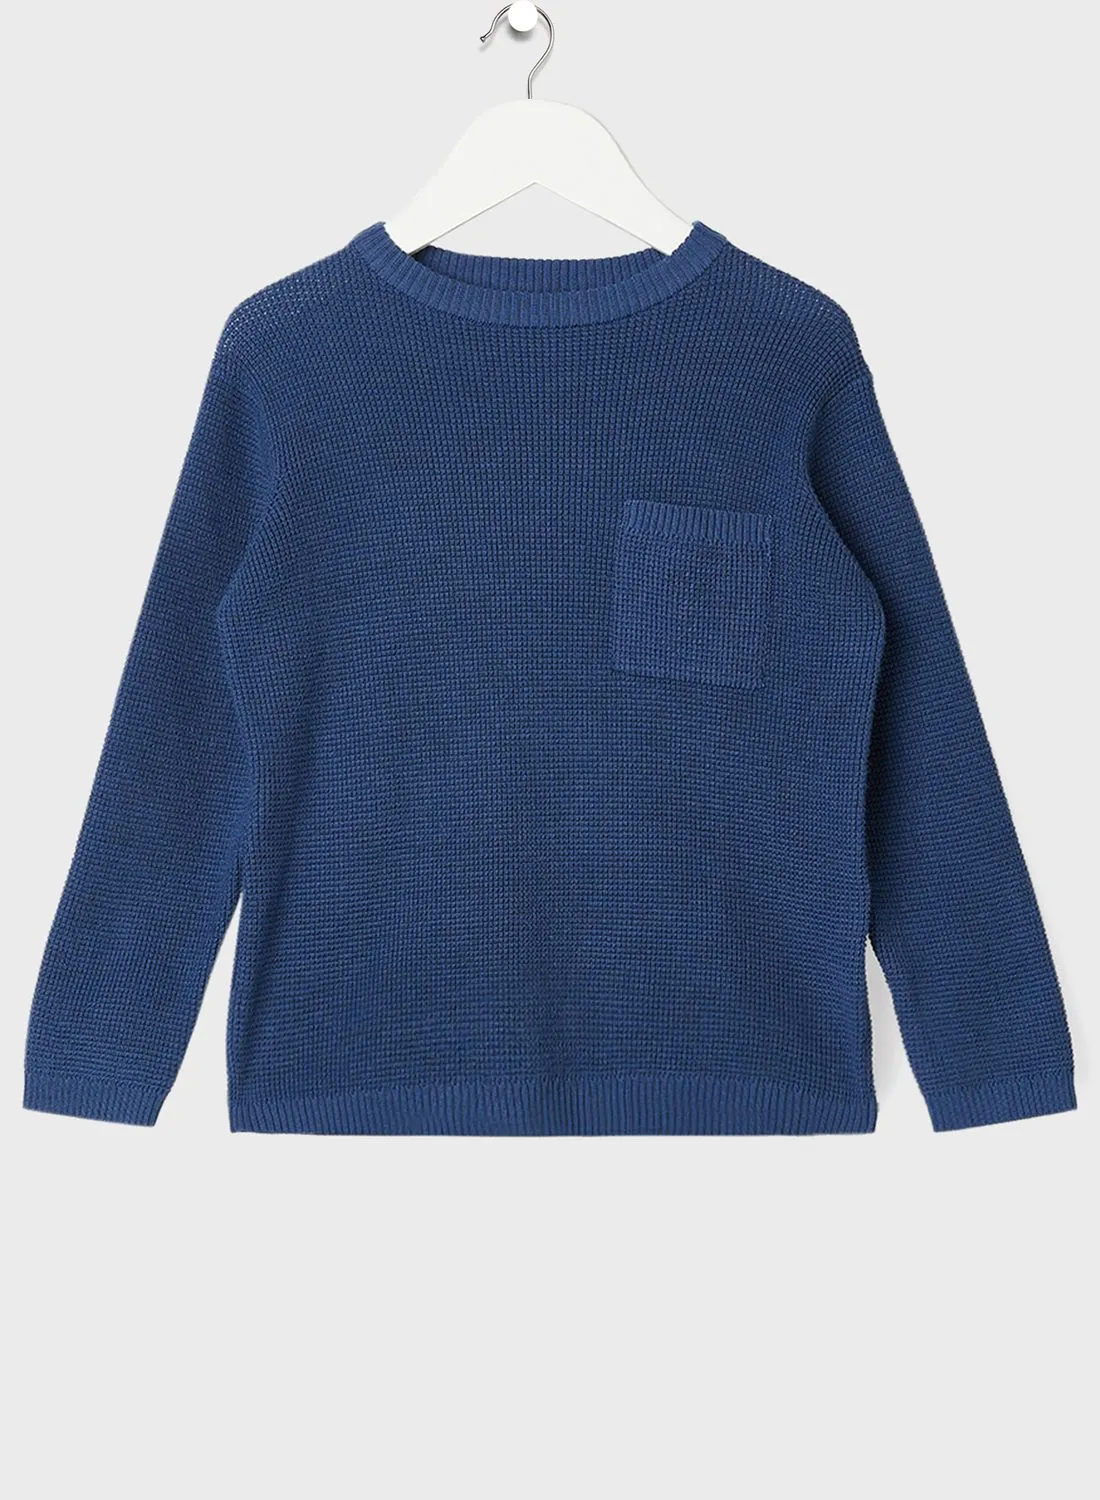 MANGO Kids Knitted Sweater